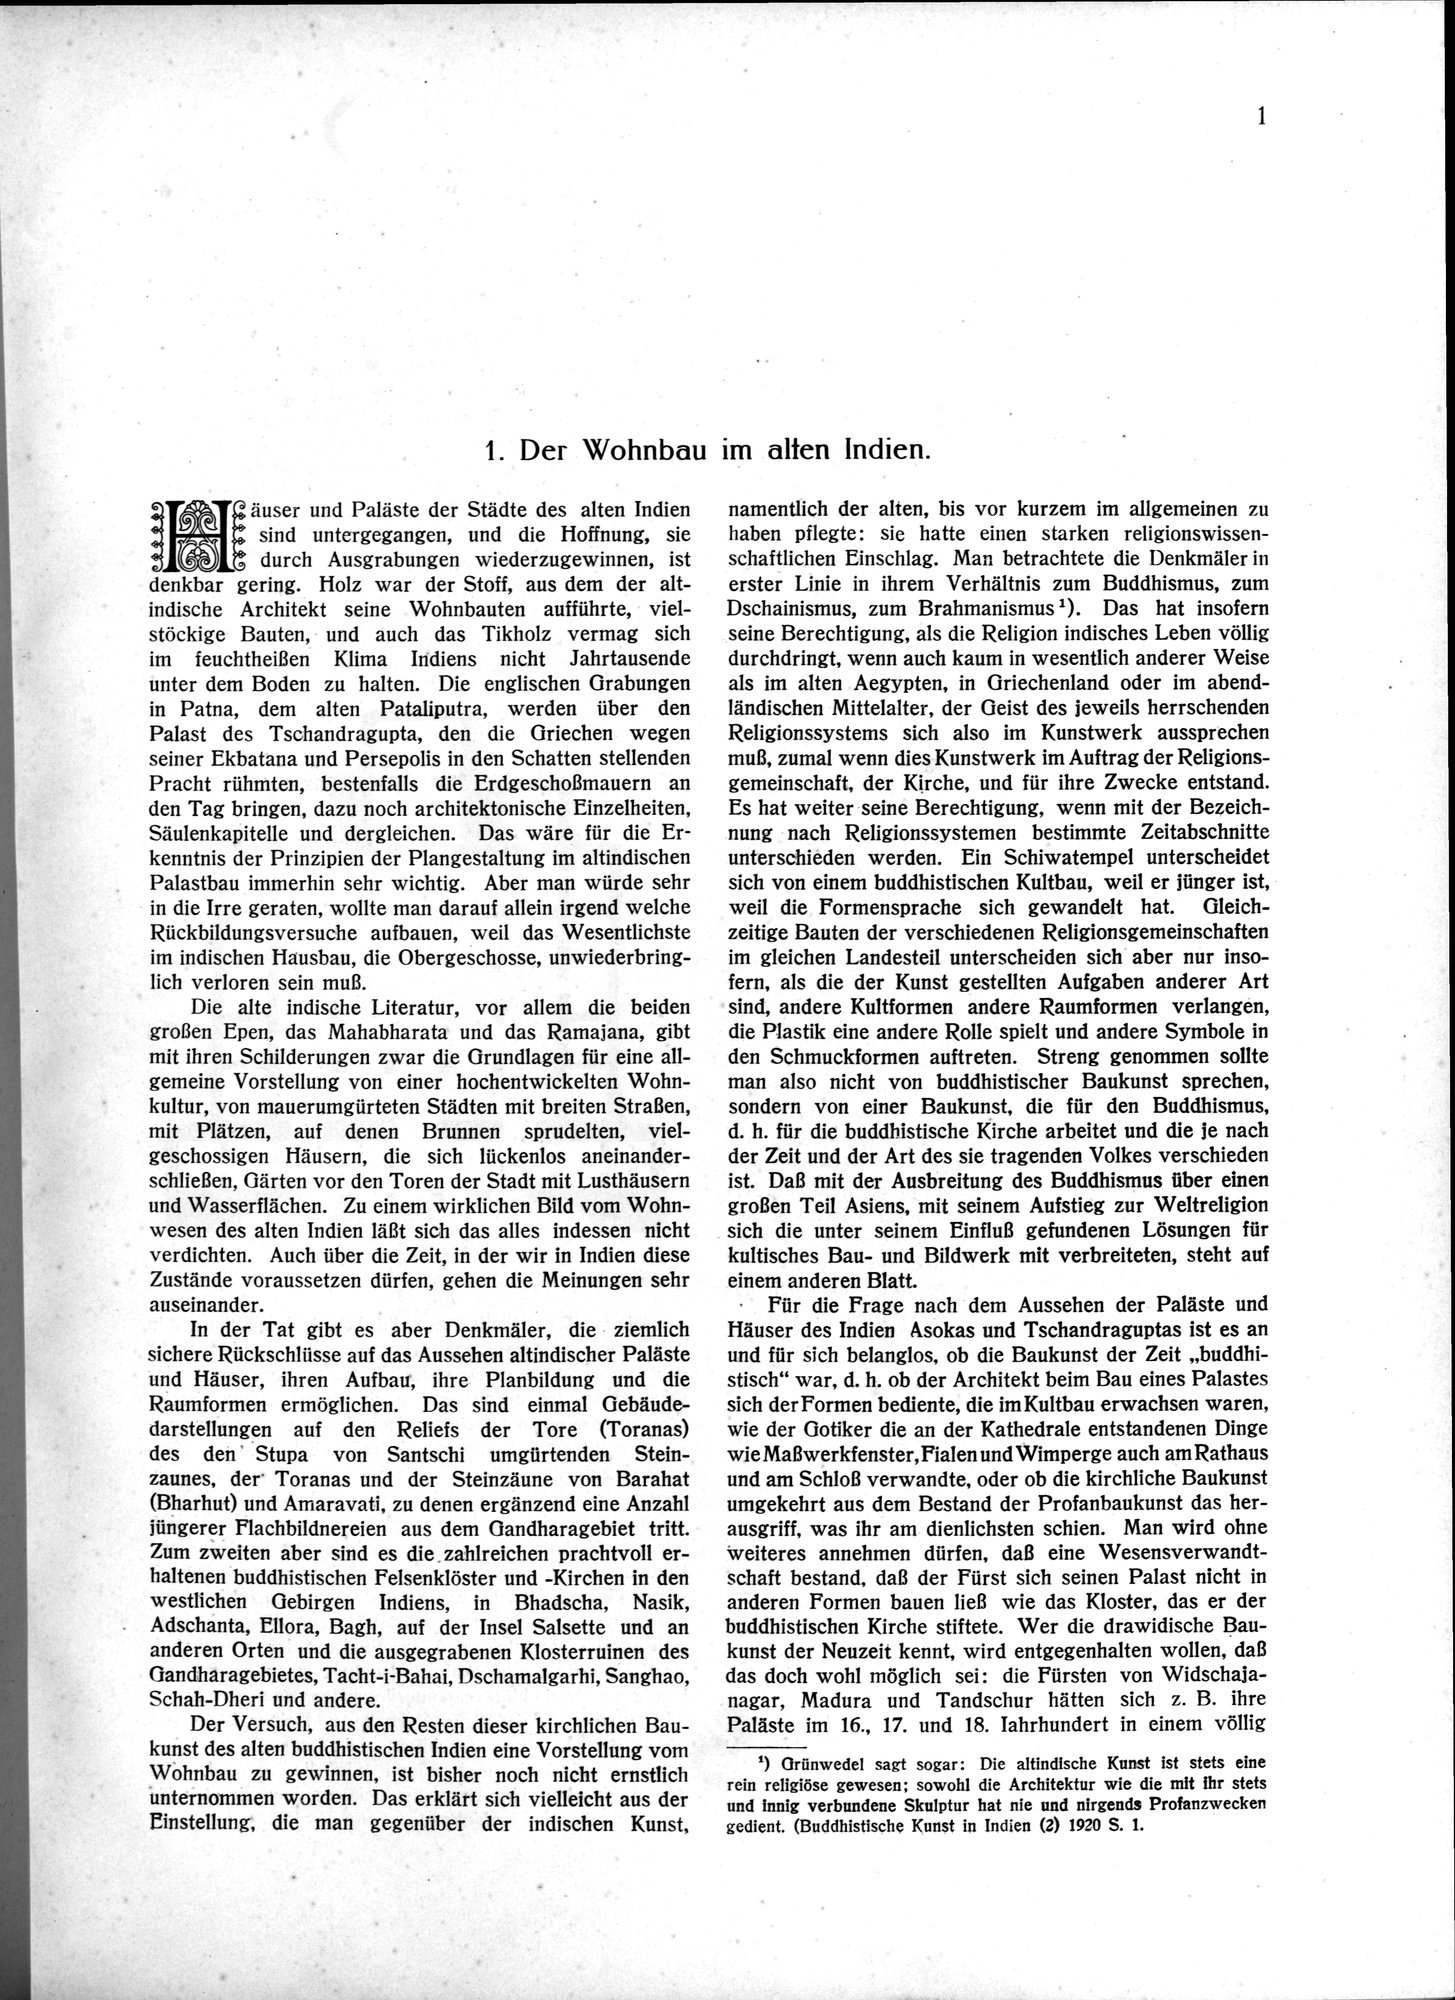 Indische Palaste und Wohnhauser : vol.1 / Page 11 (Grayscale High Resolution Image)